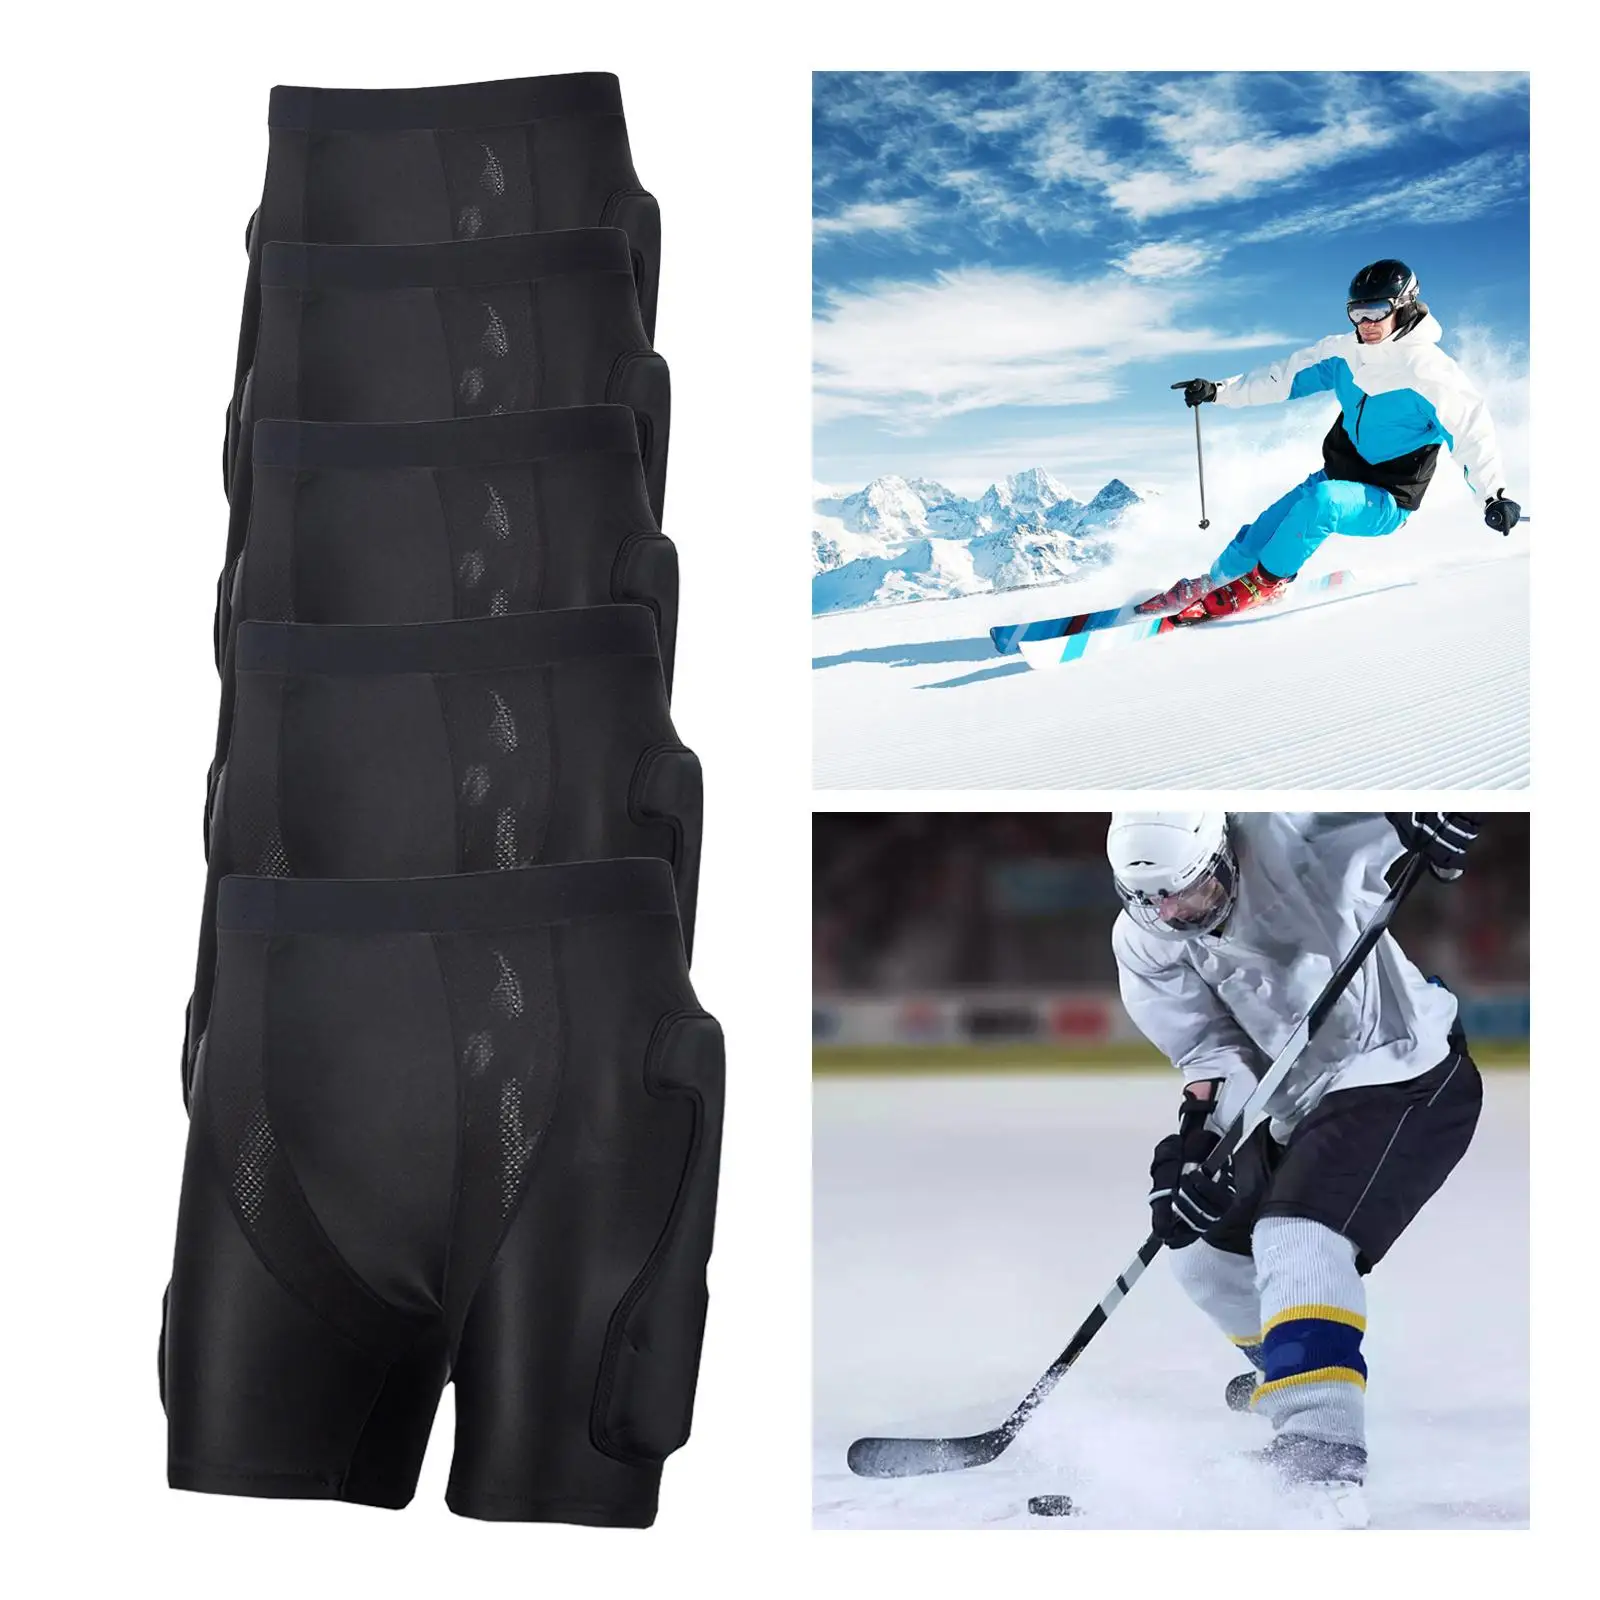 Protective Padded Shorts Skating Impact Pad Tailbone Protection Pad Pants for Snowboarding Skiing Riding Roller Skating Black